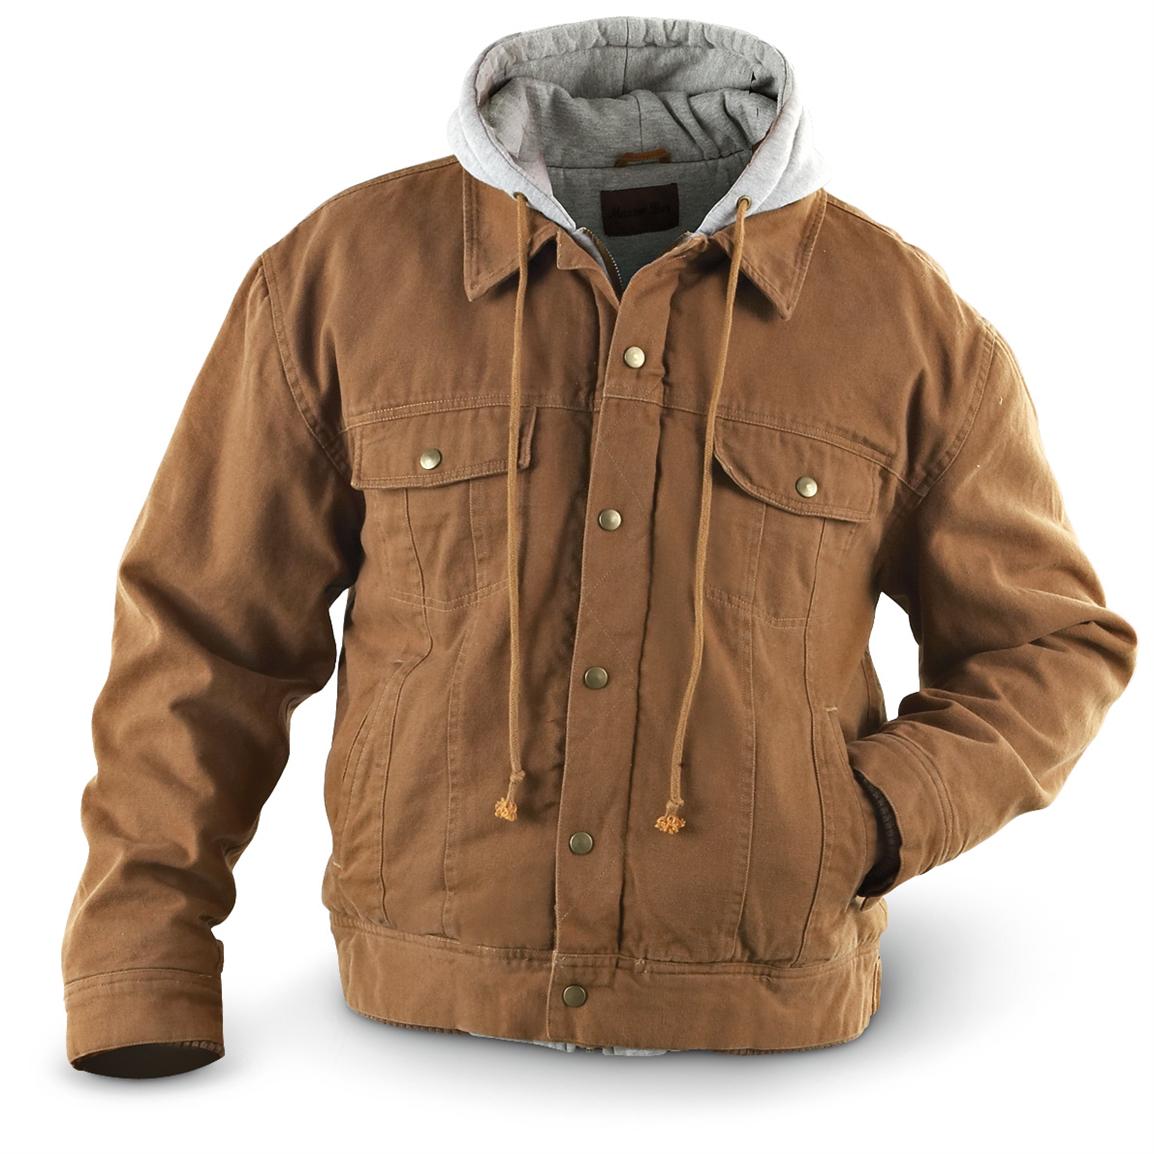 Marino Bay® Canvas Jacket with Fleece Hood - 141452, Uninsulated